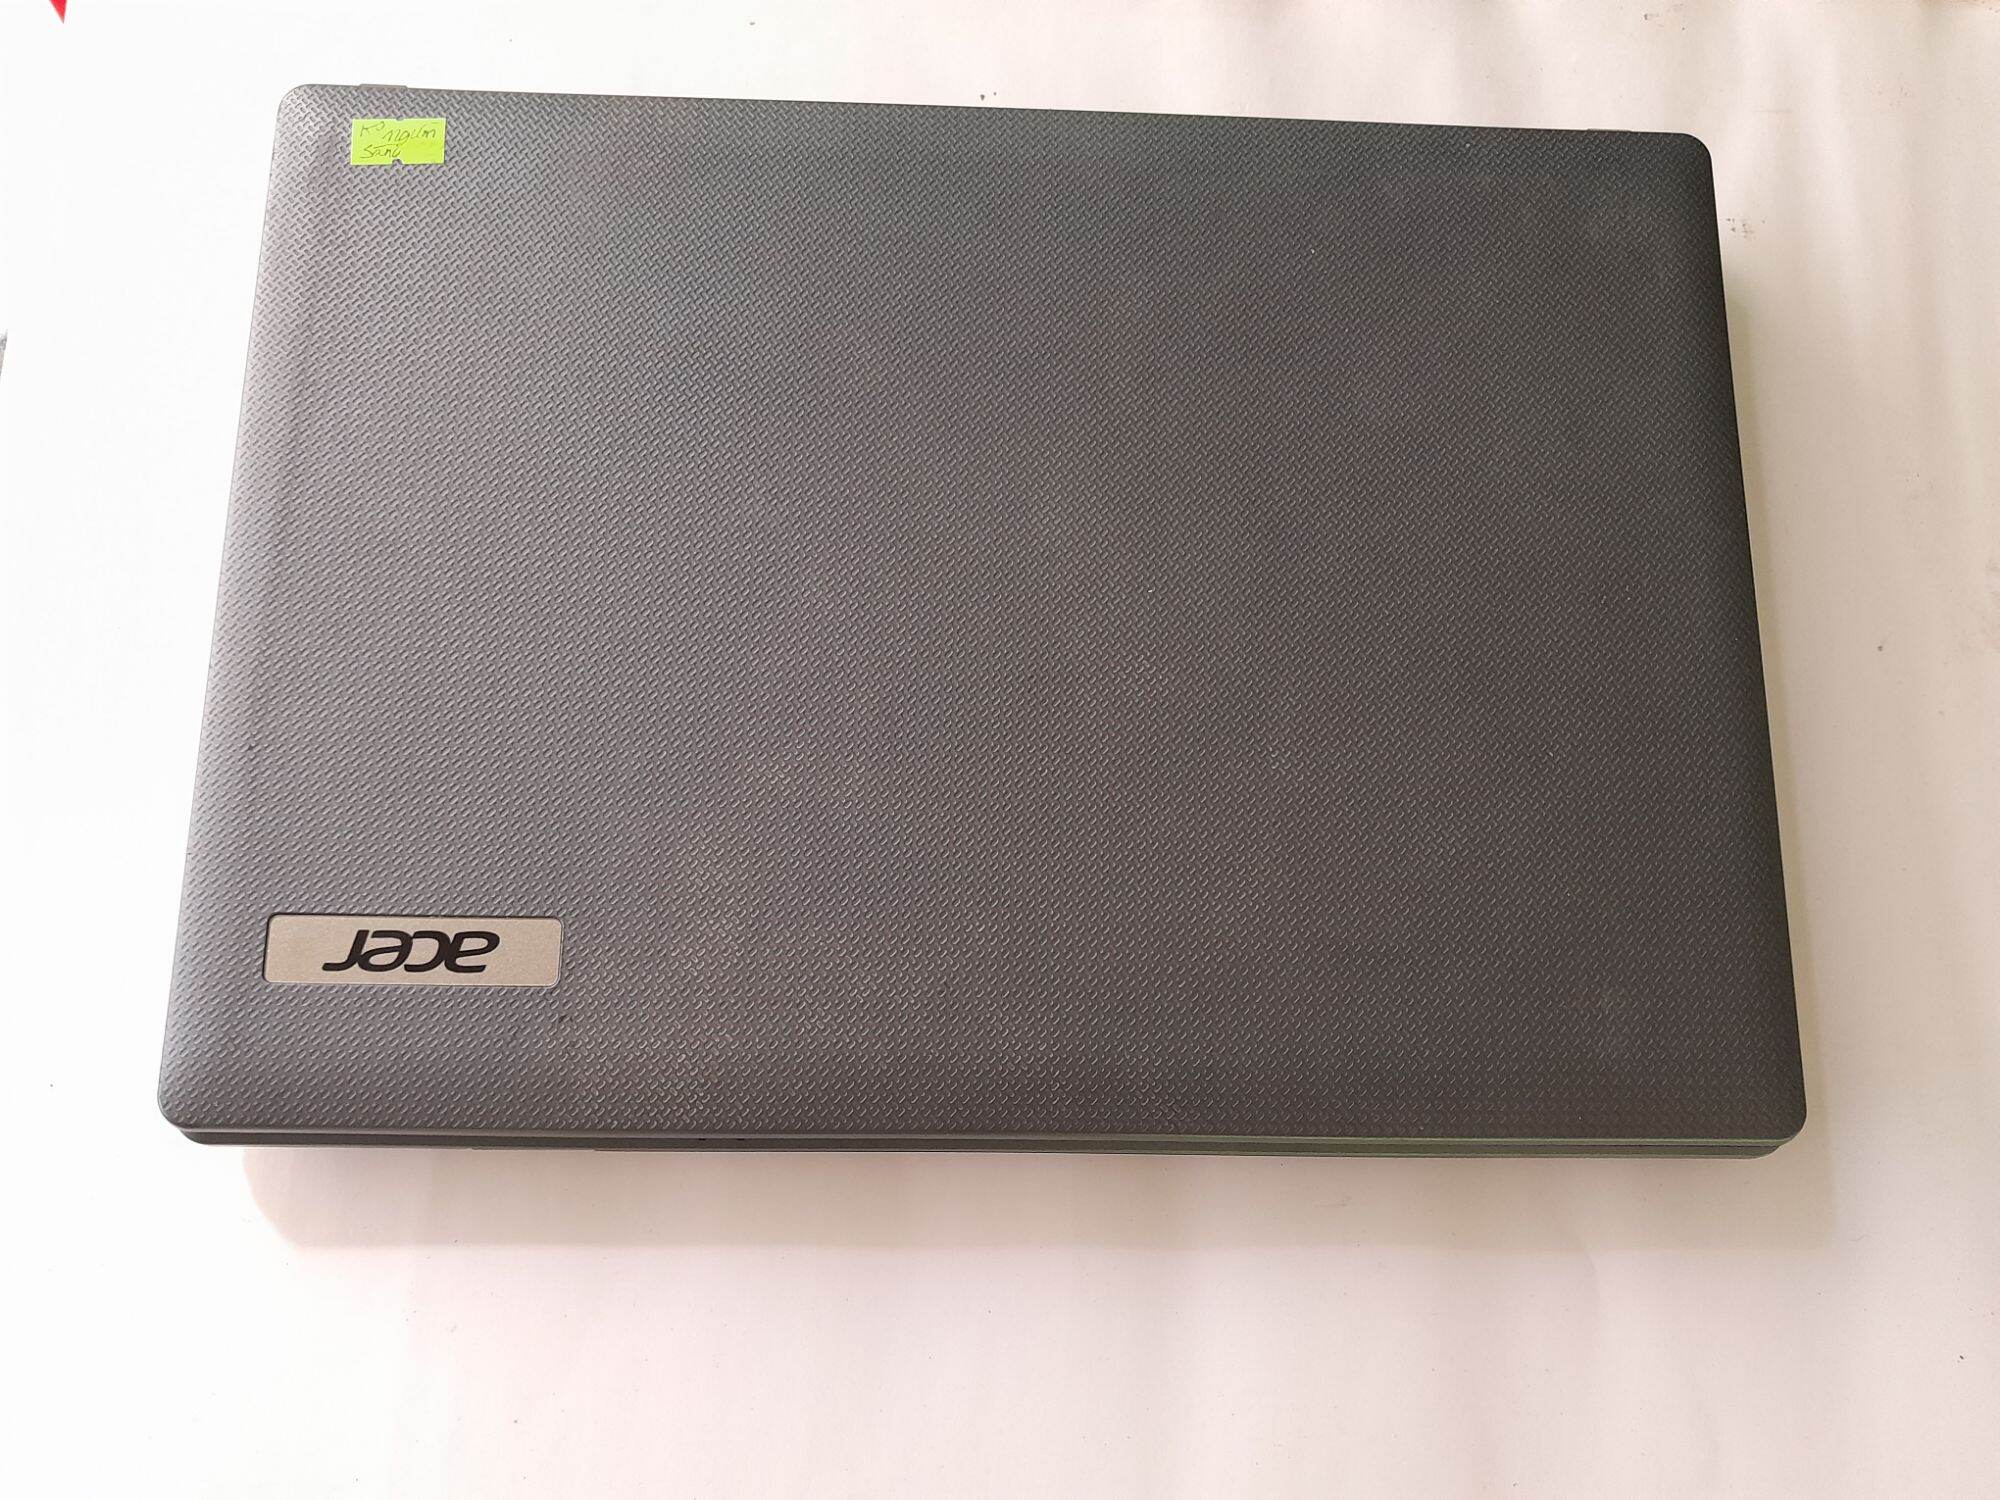 Bán Xác Laptop Acer 4349,  không lên hình. Giá bán 400k